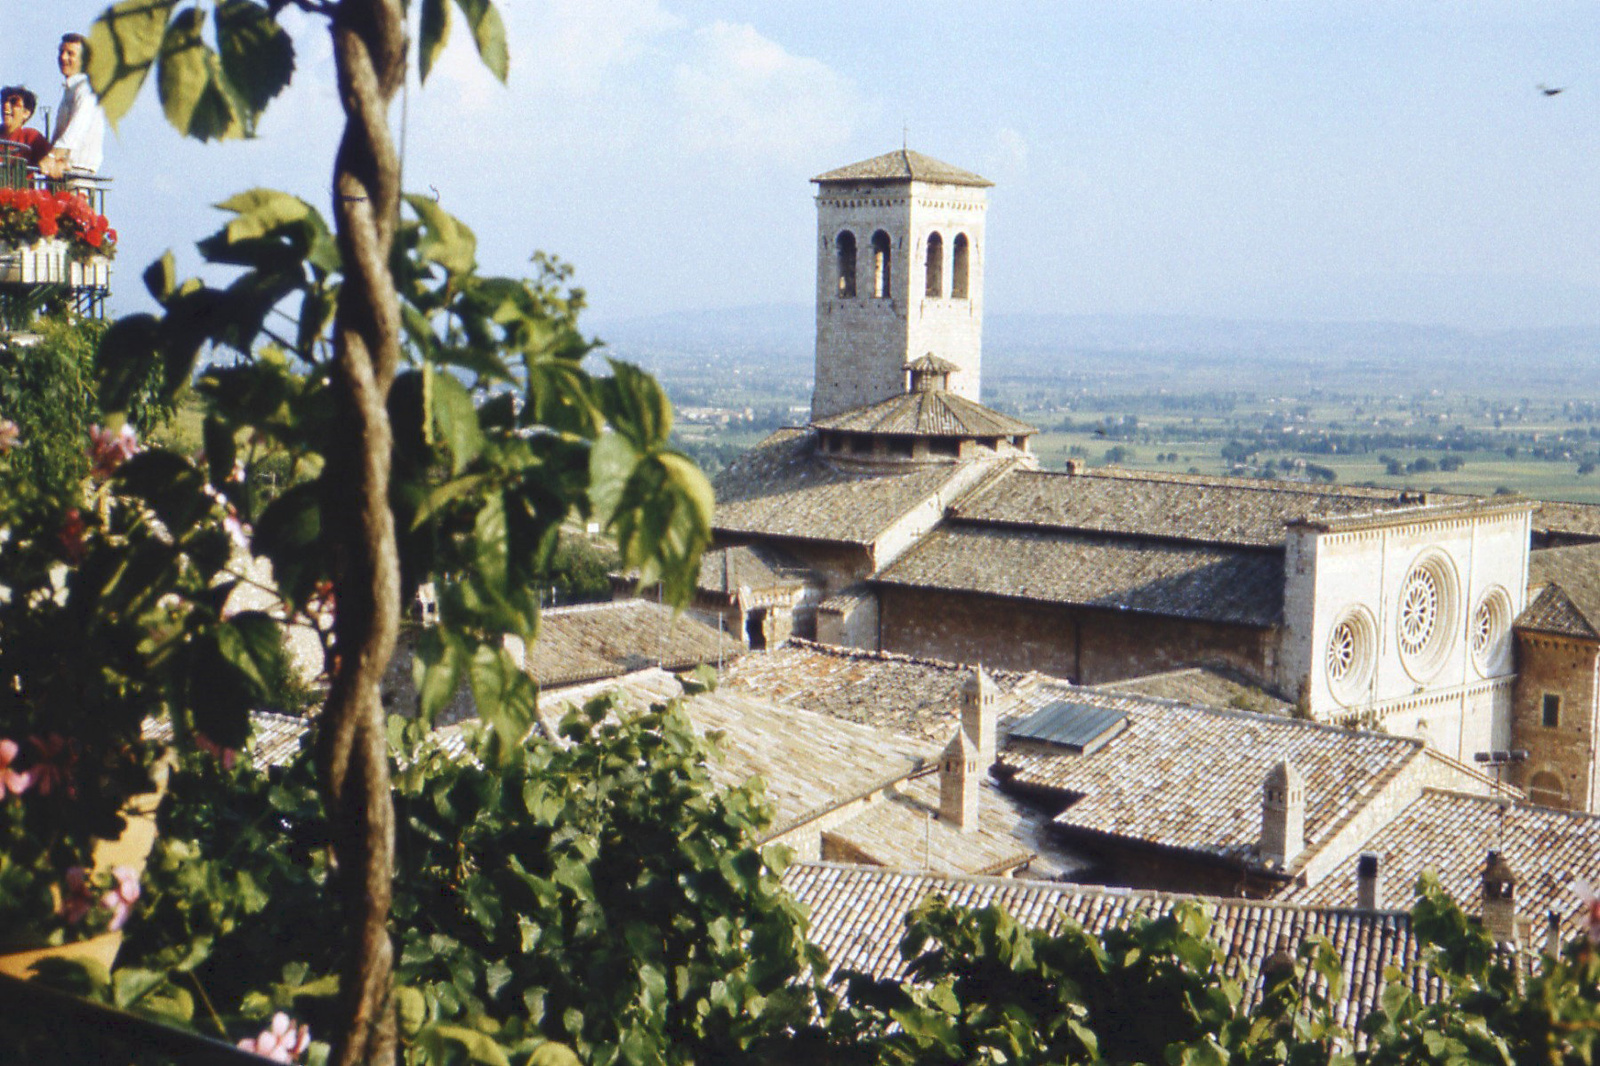 Assisi látképe